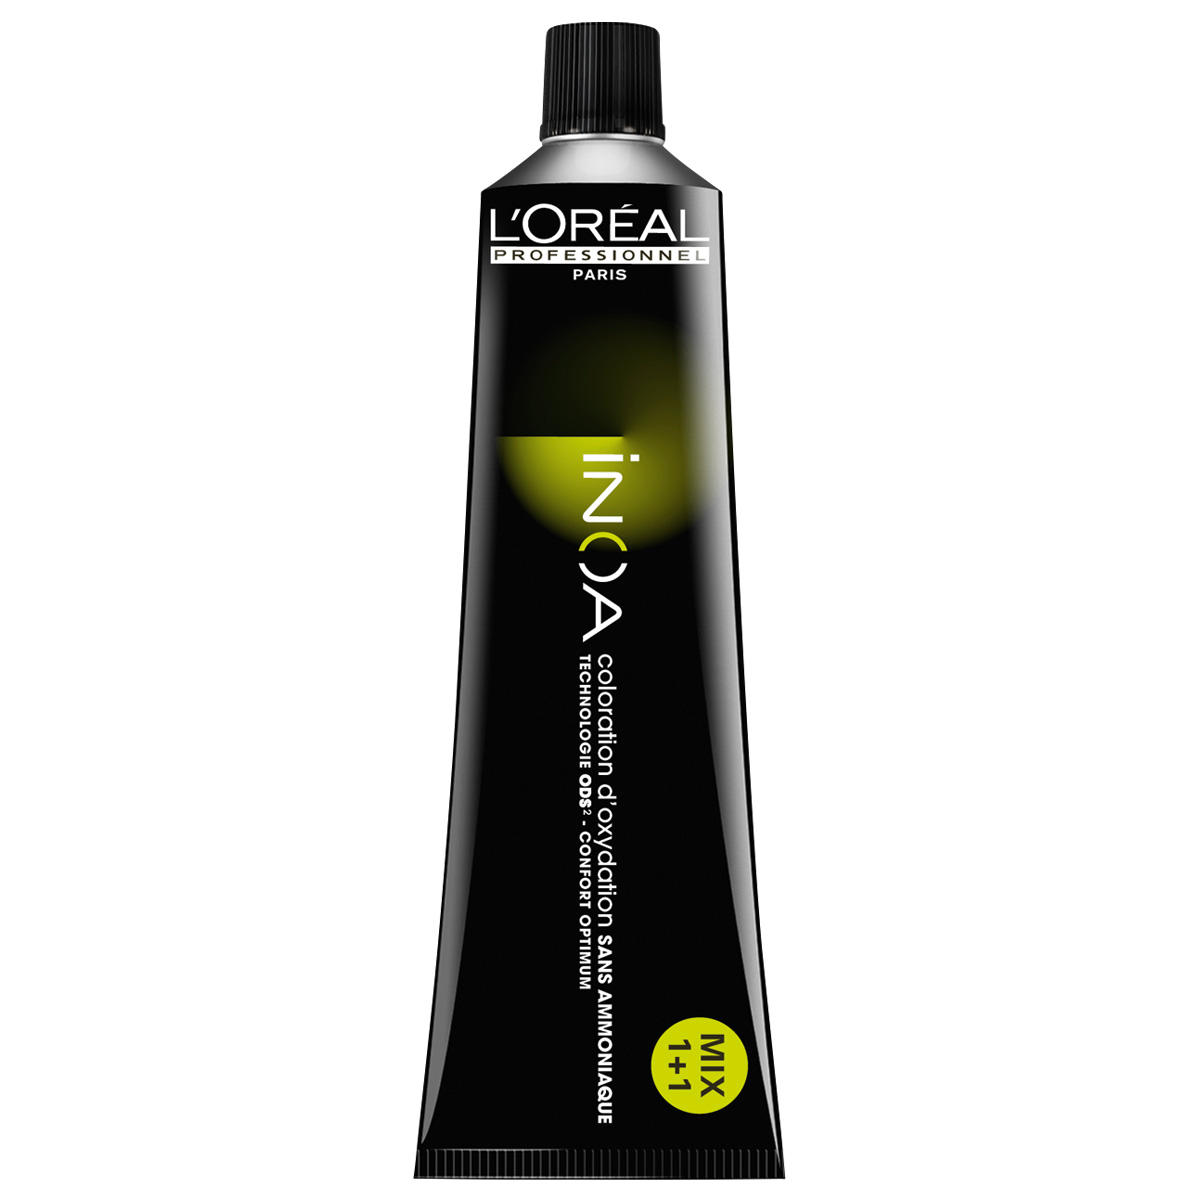 L'Oréal Professionnel Paris Coloration 9 Zeer Licht Blond, Tube 60 ml